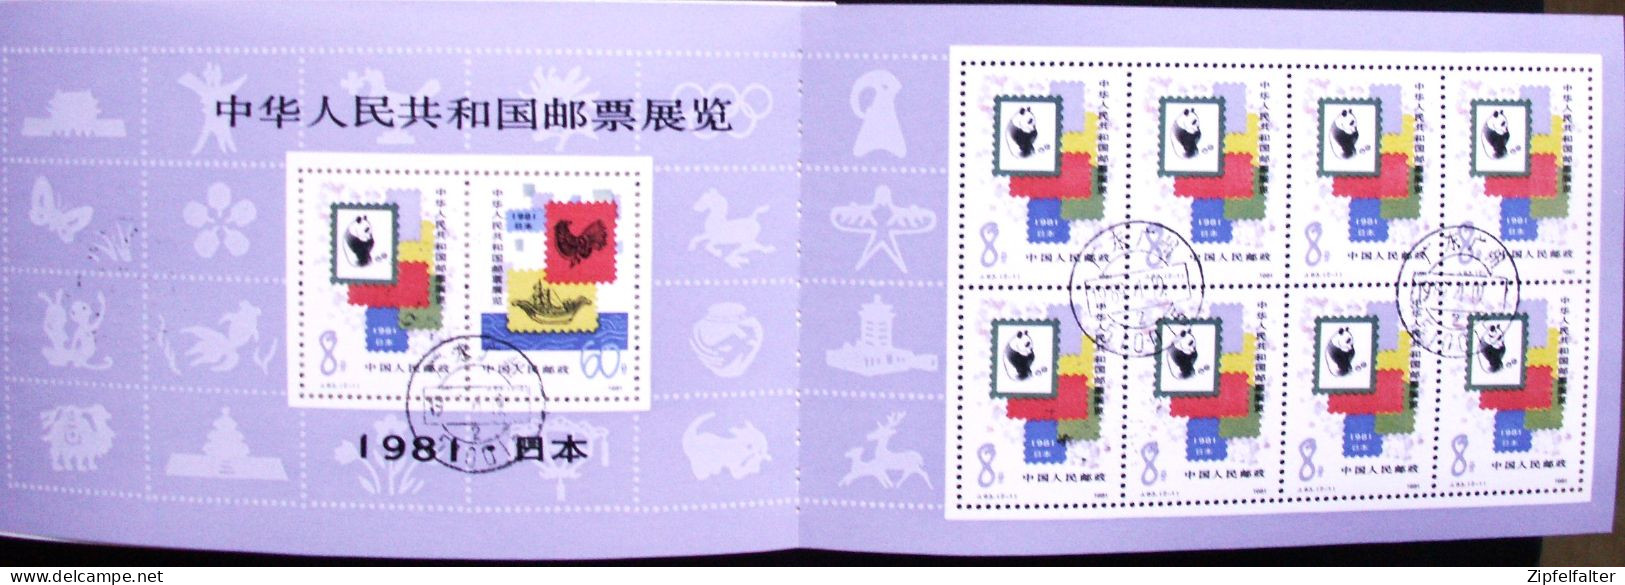 Seltenes China Markenheftchen von 1981 im Großformat. Tagesstempel Postamt Guangzhou. Siehe alle 8 Bilder.